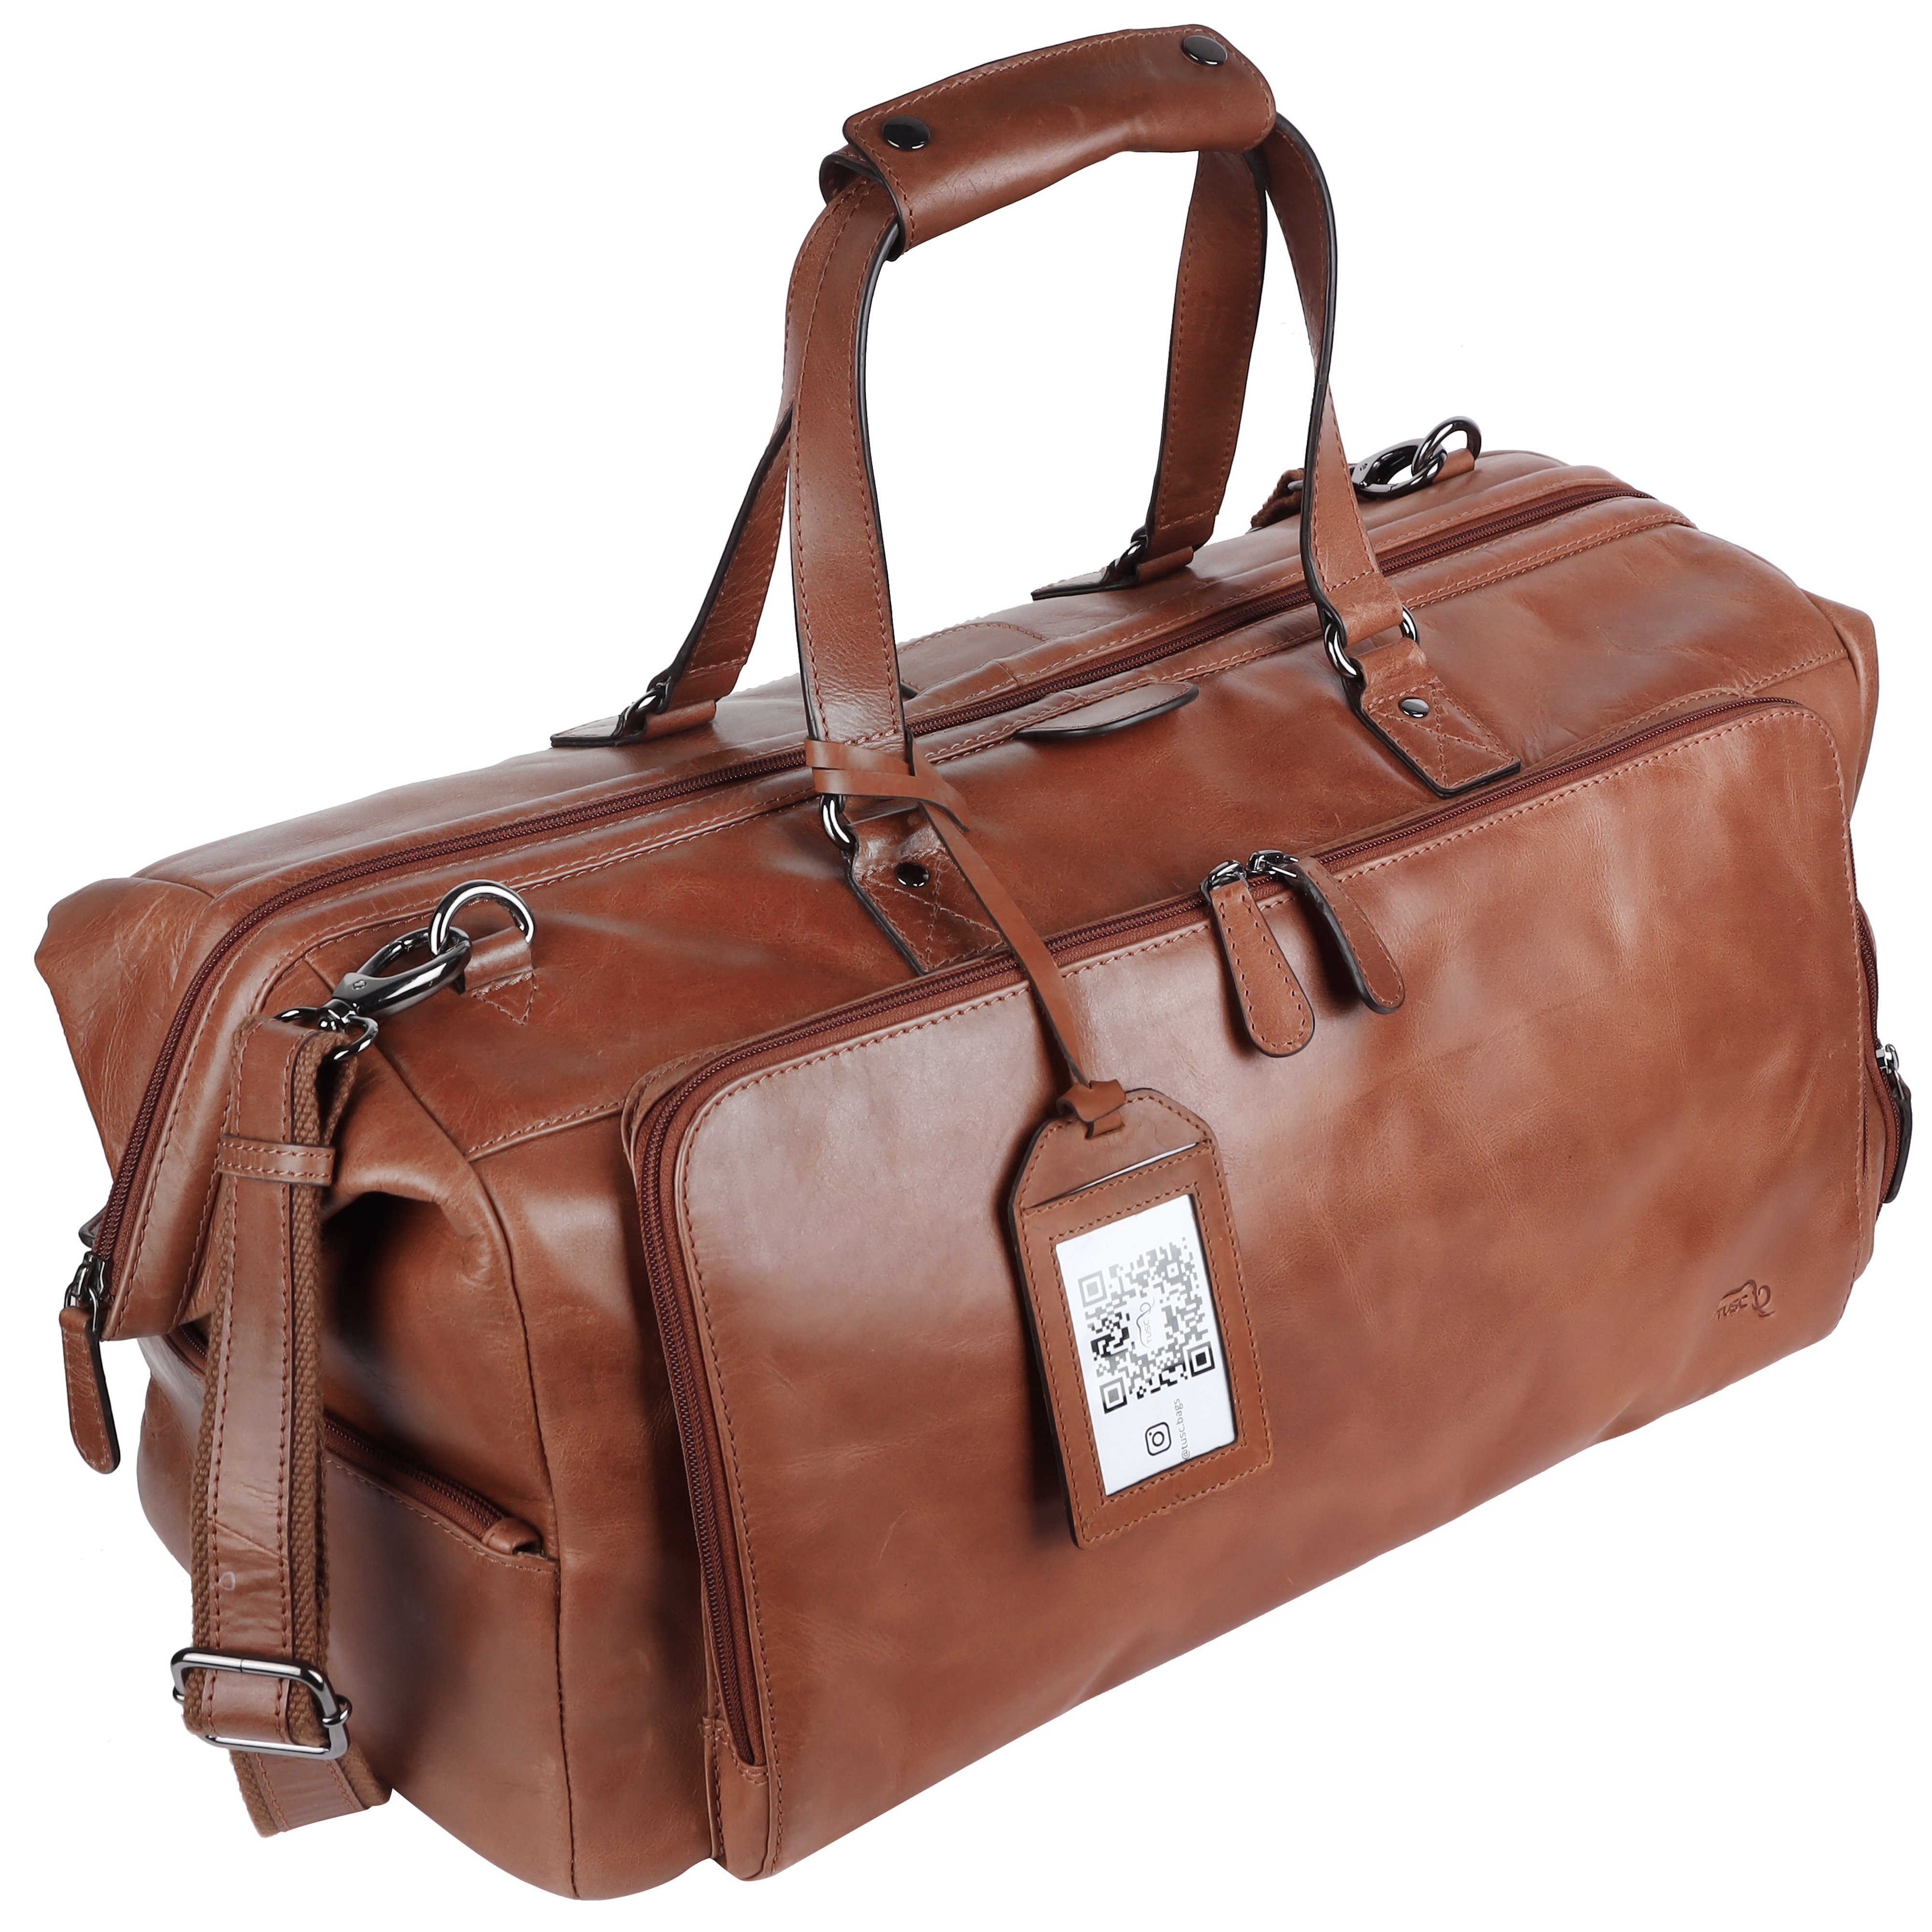 Reisetasche TUSC Tarvos, Laptopfach Premium aus Reisetasche mit Leder